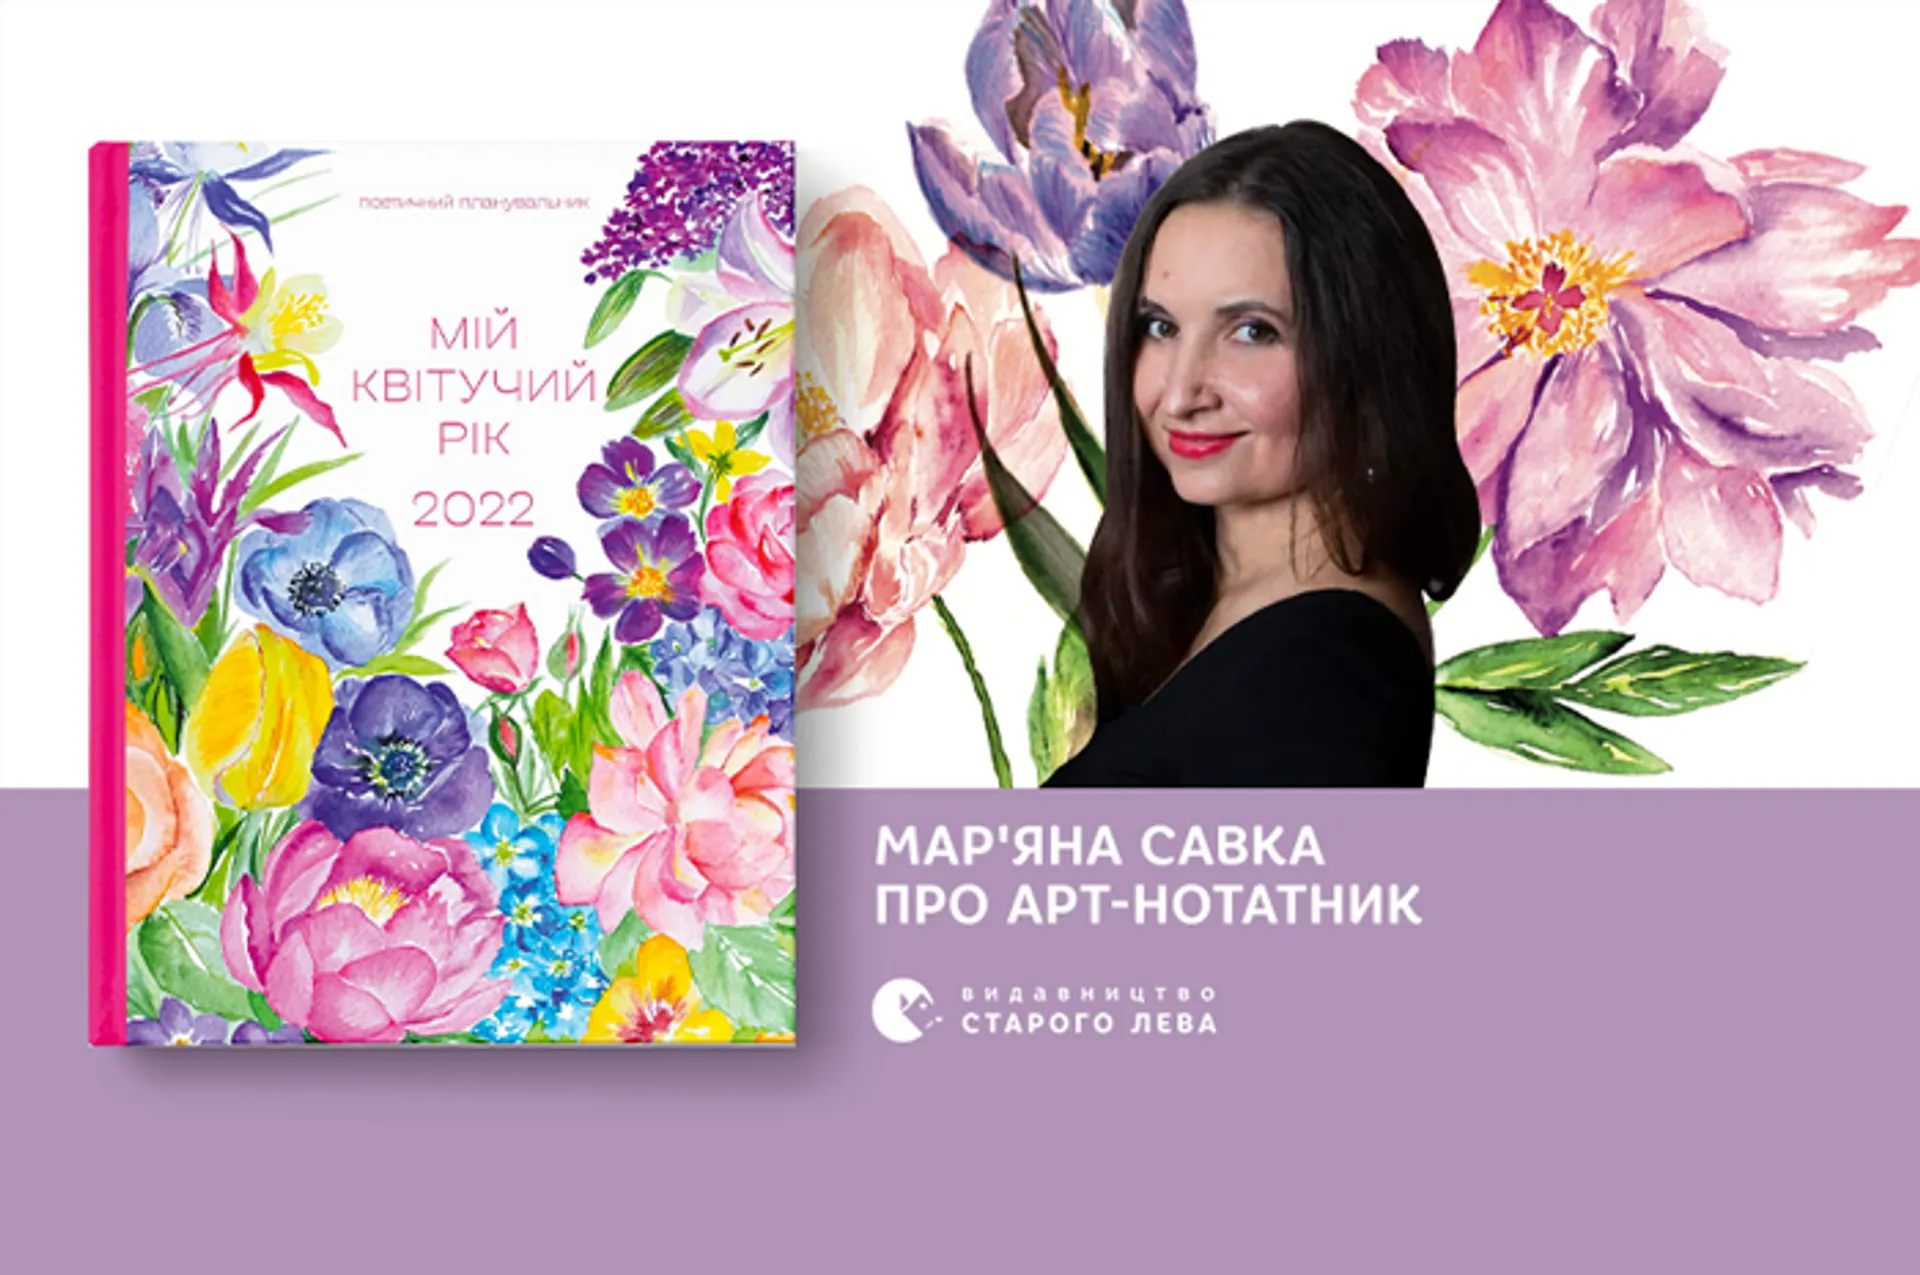 Мар’яна Савка про поетичний нотатник «Мій квітучий рік. 2022»